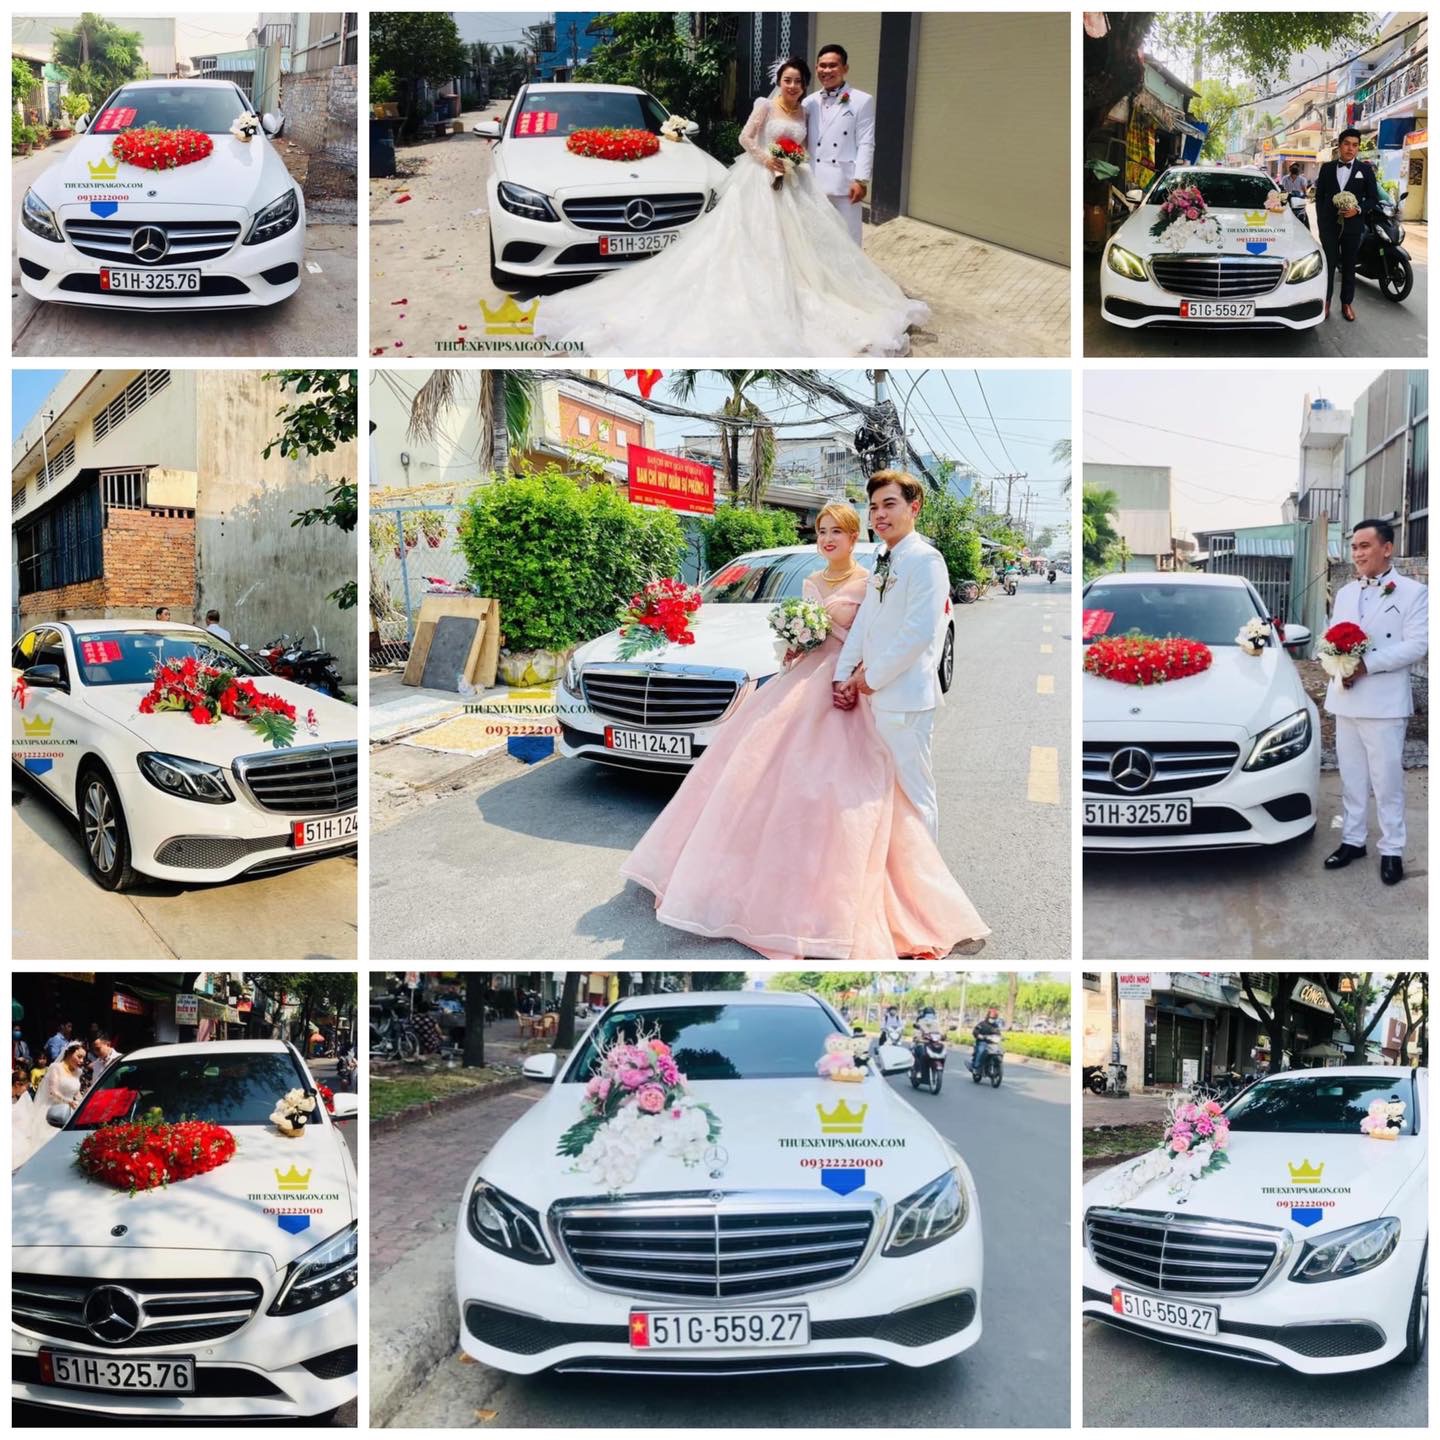 Vip Cars Bảo Dương cho thuê nhiều xe cưới Vip Mercedes ngày 7/4/2021